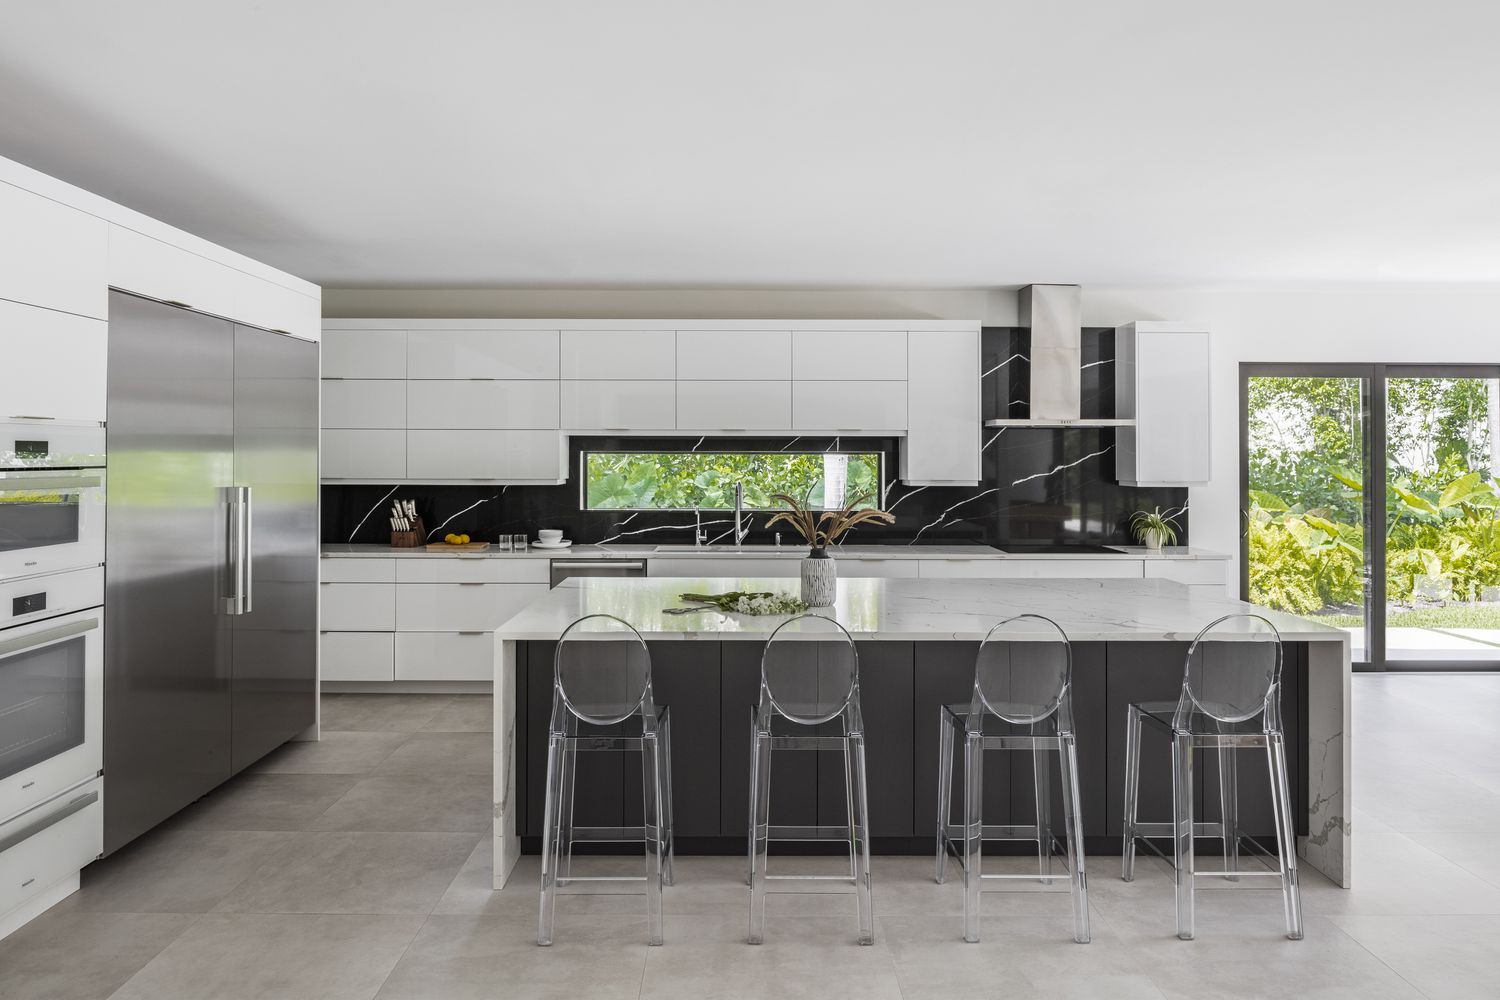 El suelo gris cubre una cocina que también incluye elegantes armarios modernos blancos sin pomos